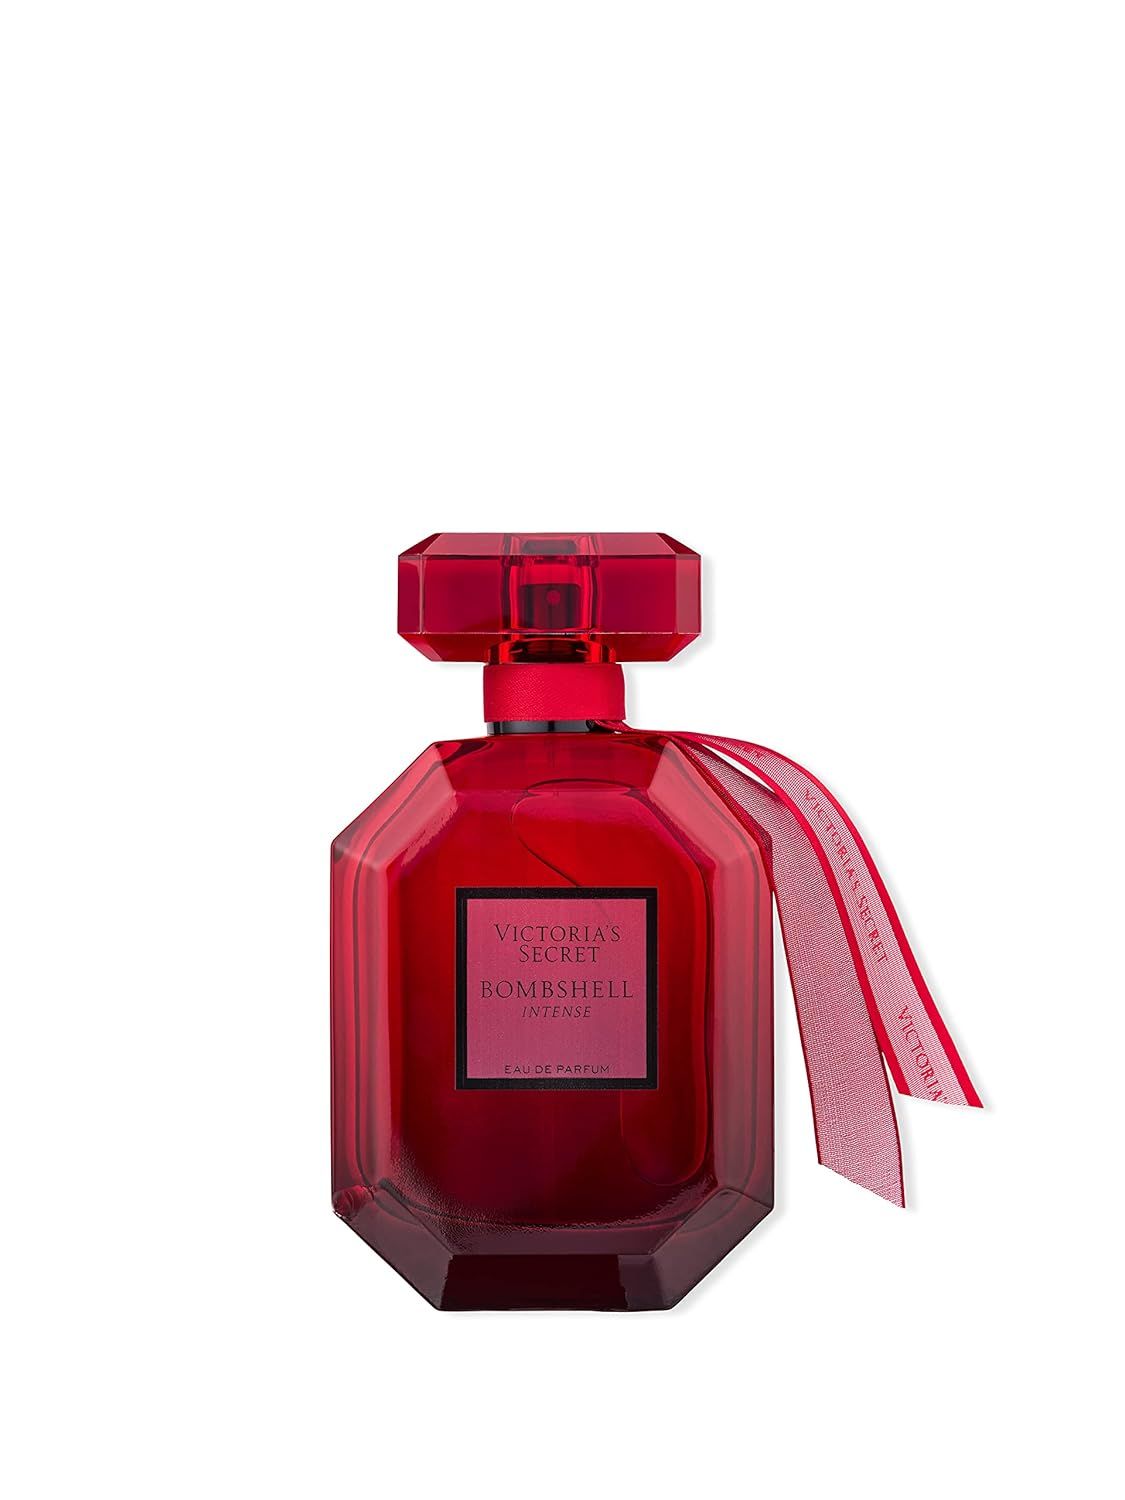 Victoria's Secret Bombshell Intense 3.4oz Eau de Parfum | Amazon (US)